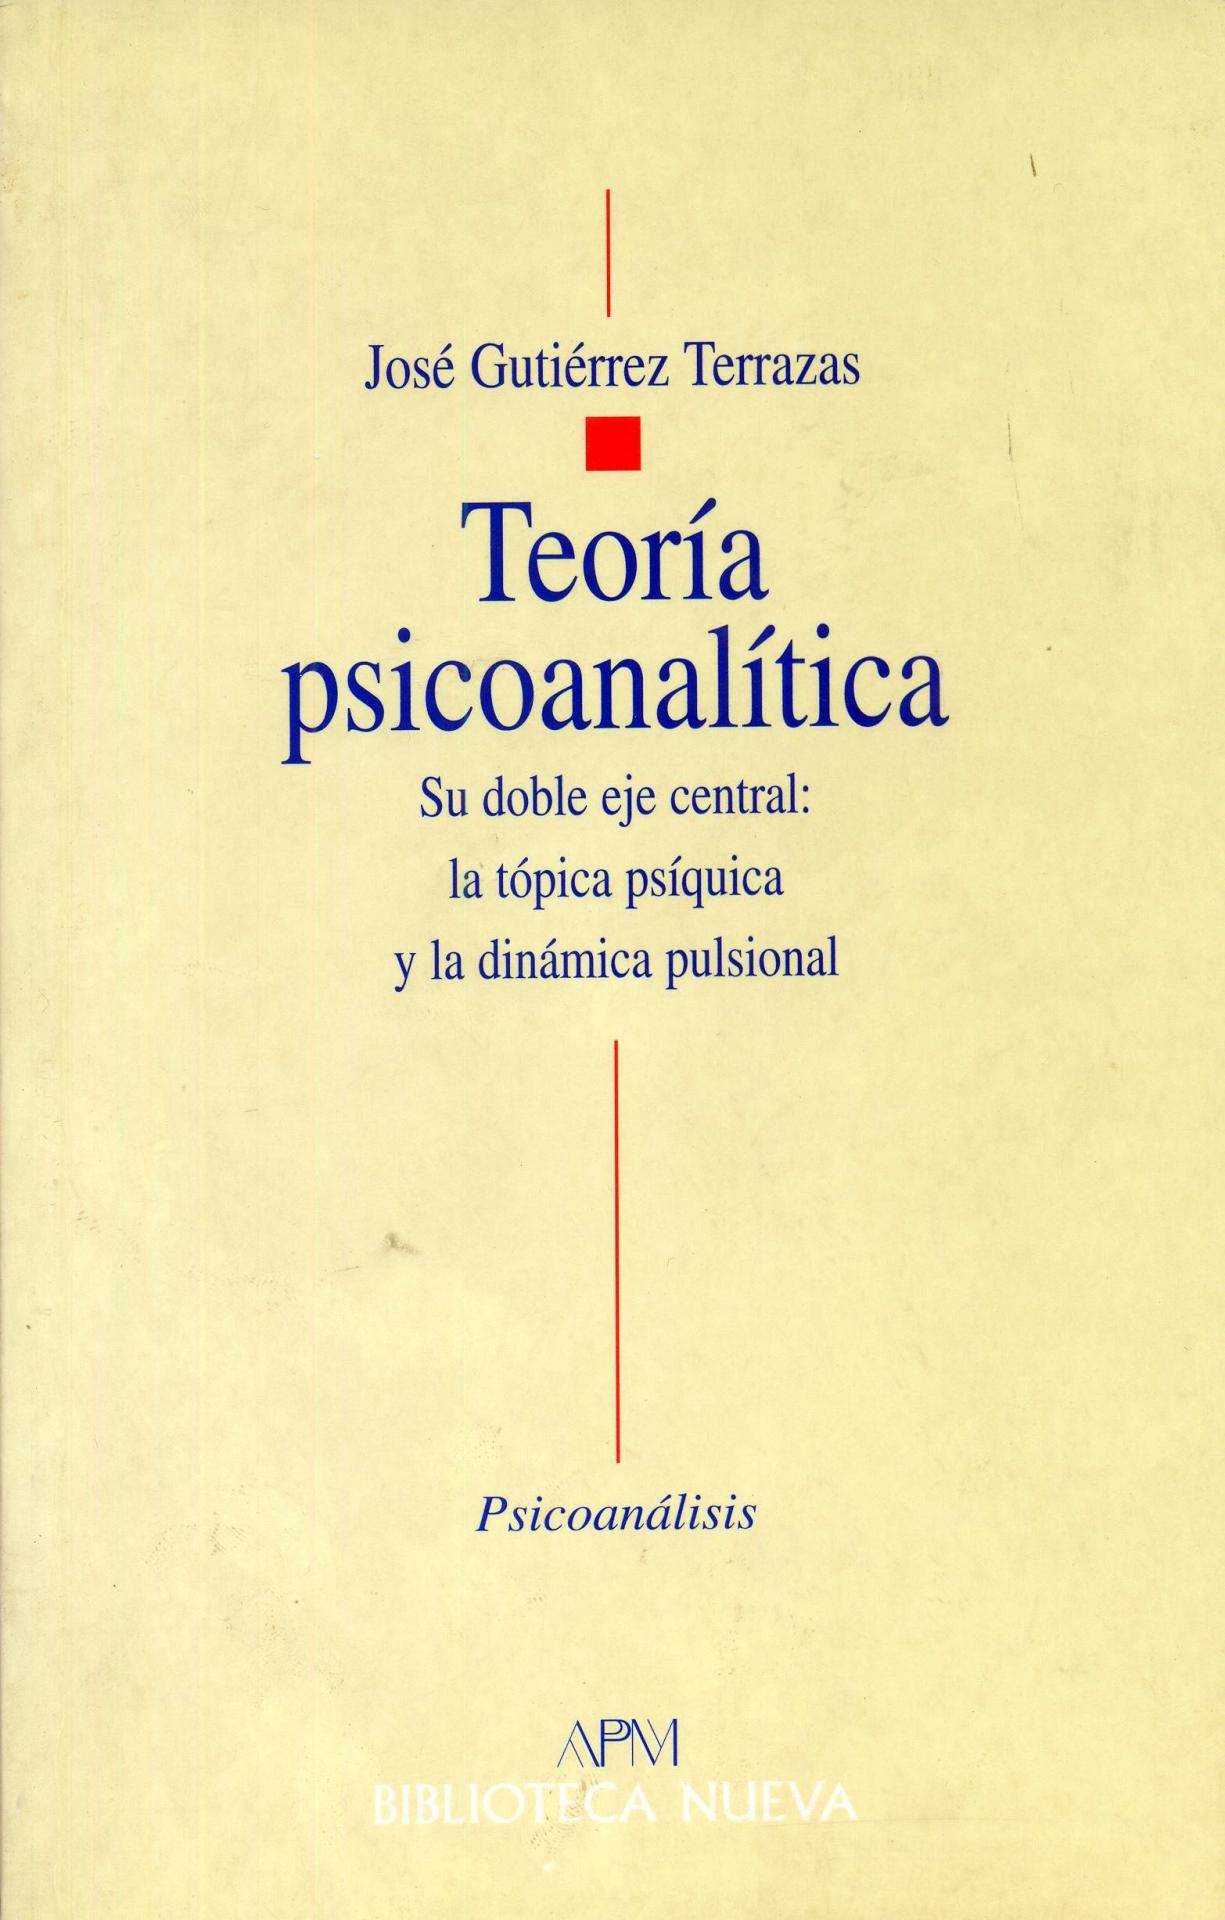 TEORÍA PSICOANALÍTICA. Su doble eje central: la tópica psíquica y la dinámica pulsional. Gutiérrez Terrazas, J.